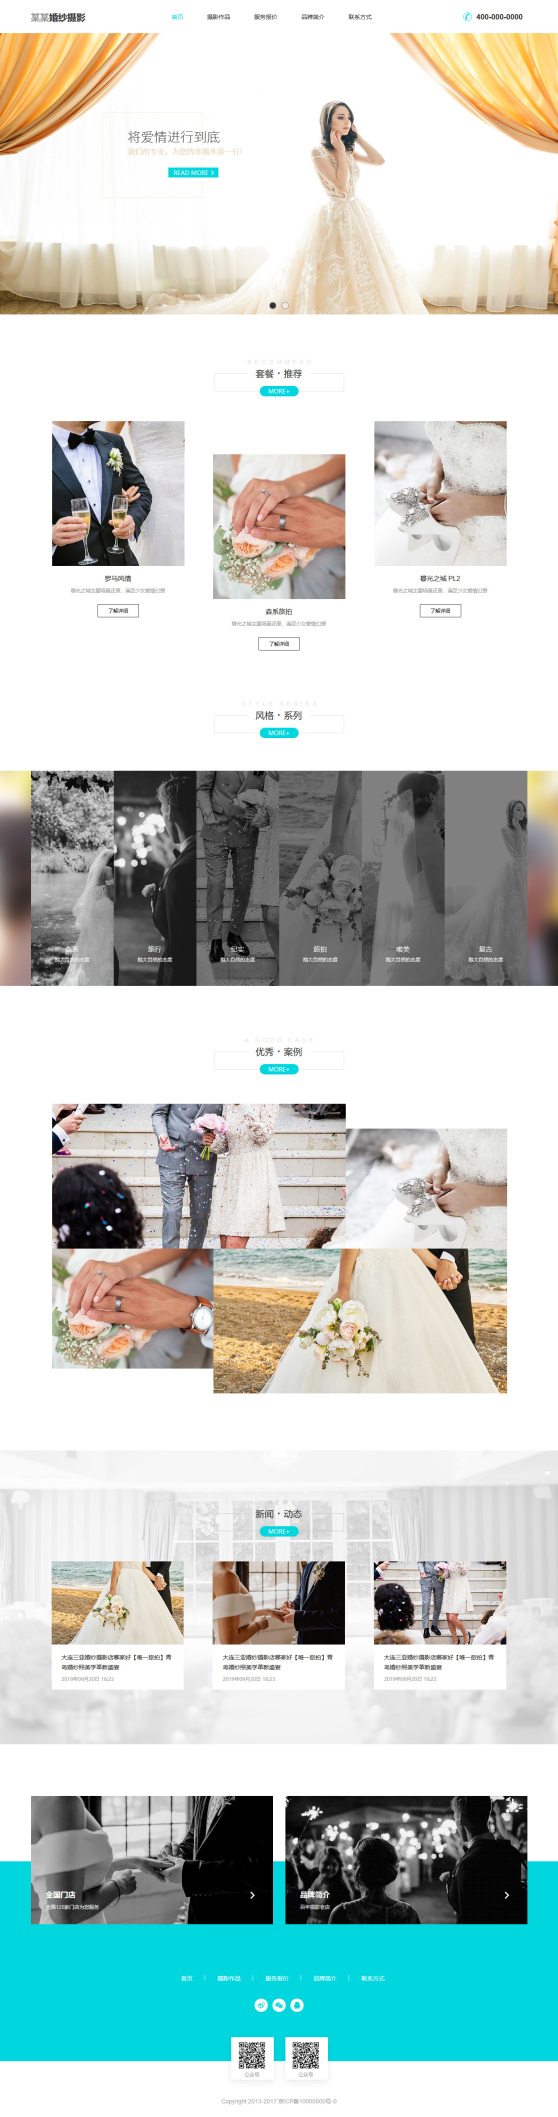 簡約婚紗攝影公司網頁模板